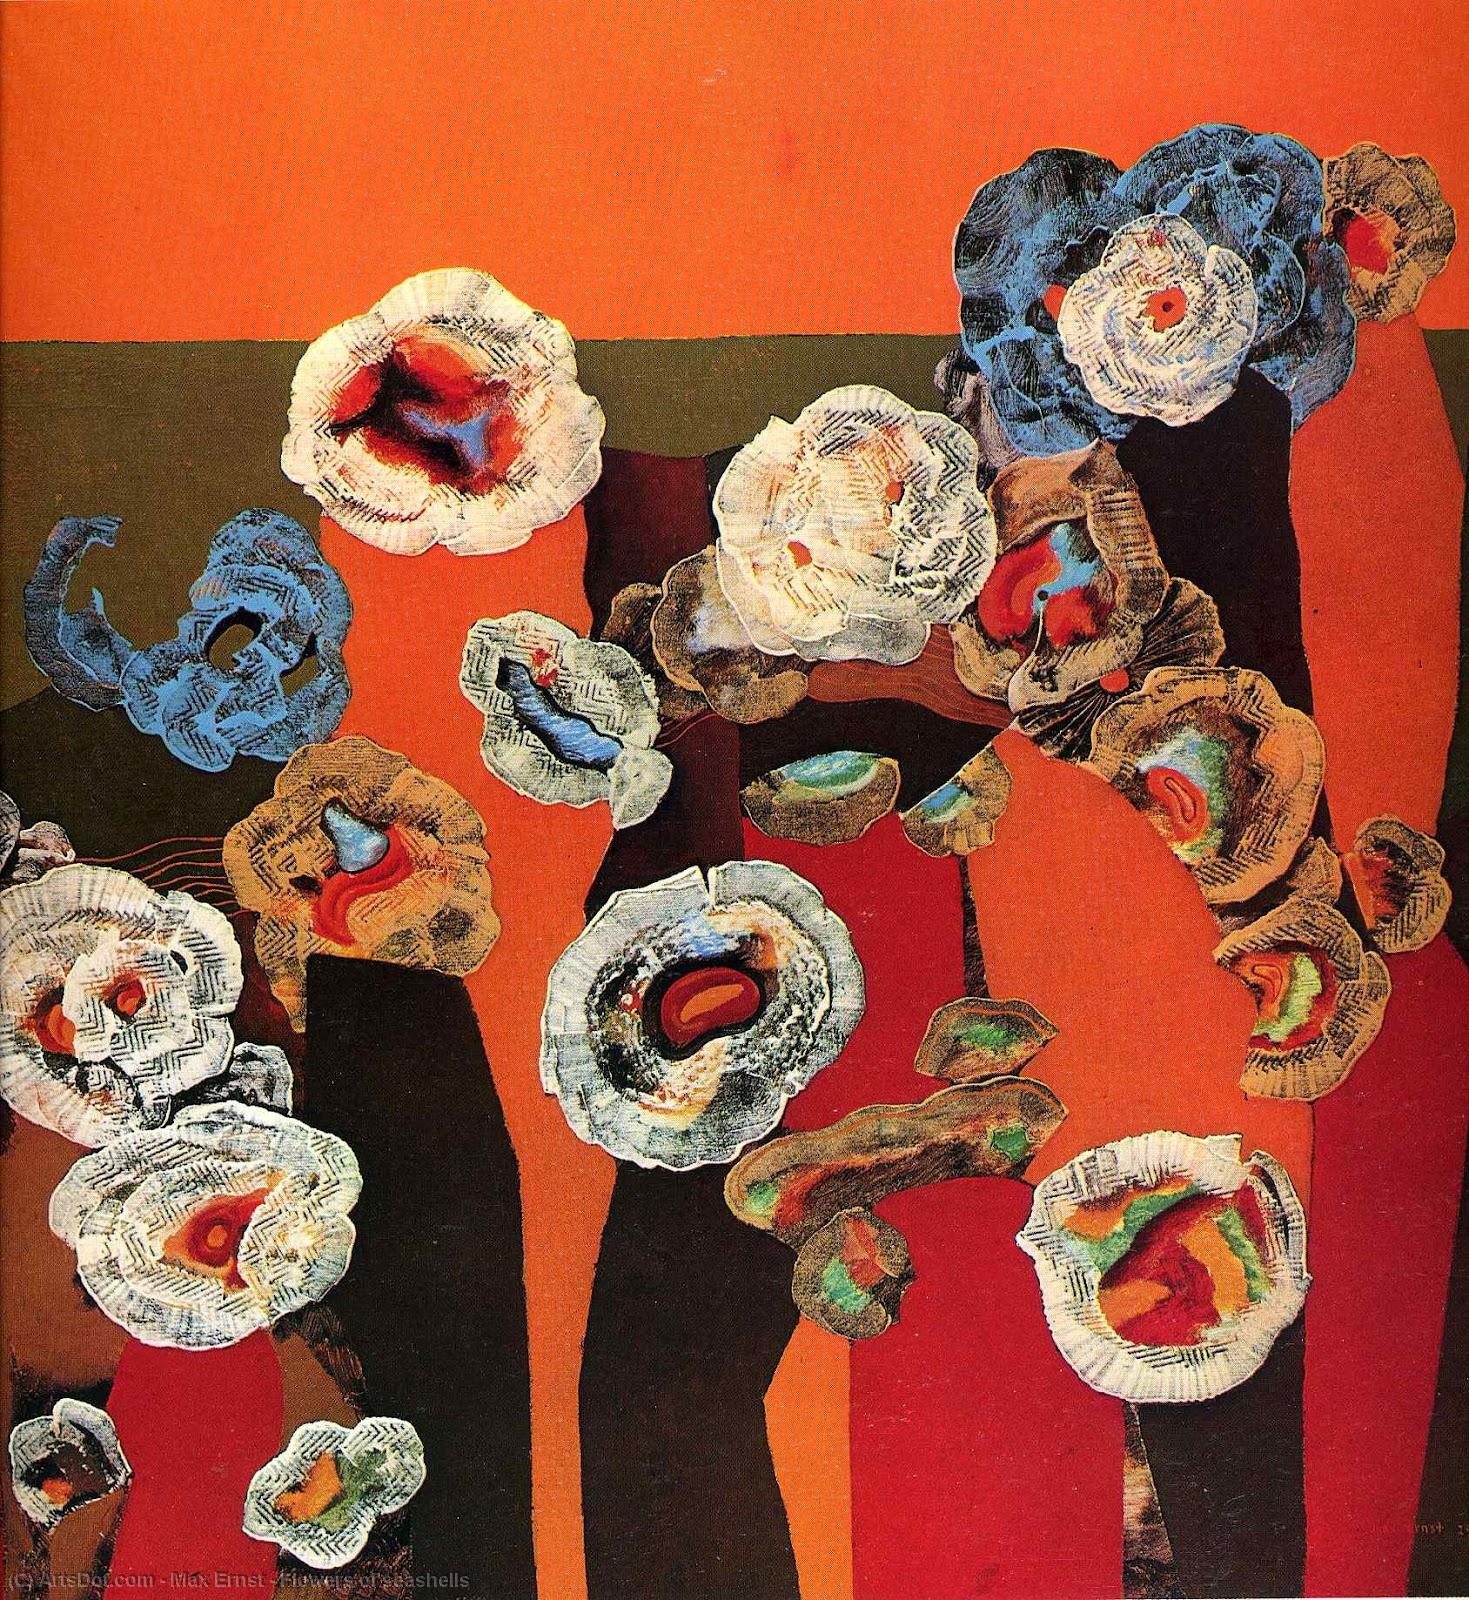 WikiOO.org - Εγκυκλοπαίδεια Καλών Τεχνών - Ζωγραφική, έργα τέχνης Max Ernst - Flowers of seashells